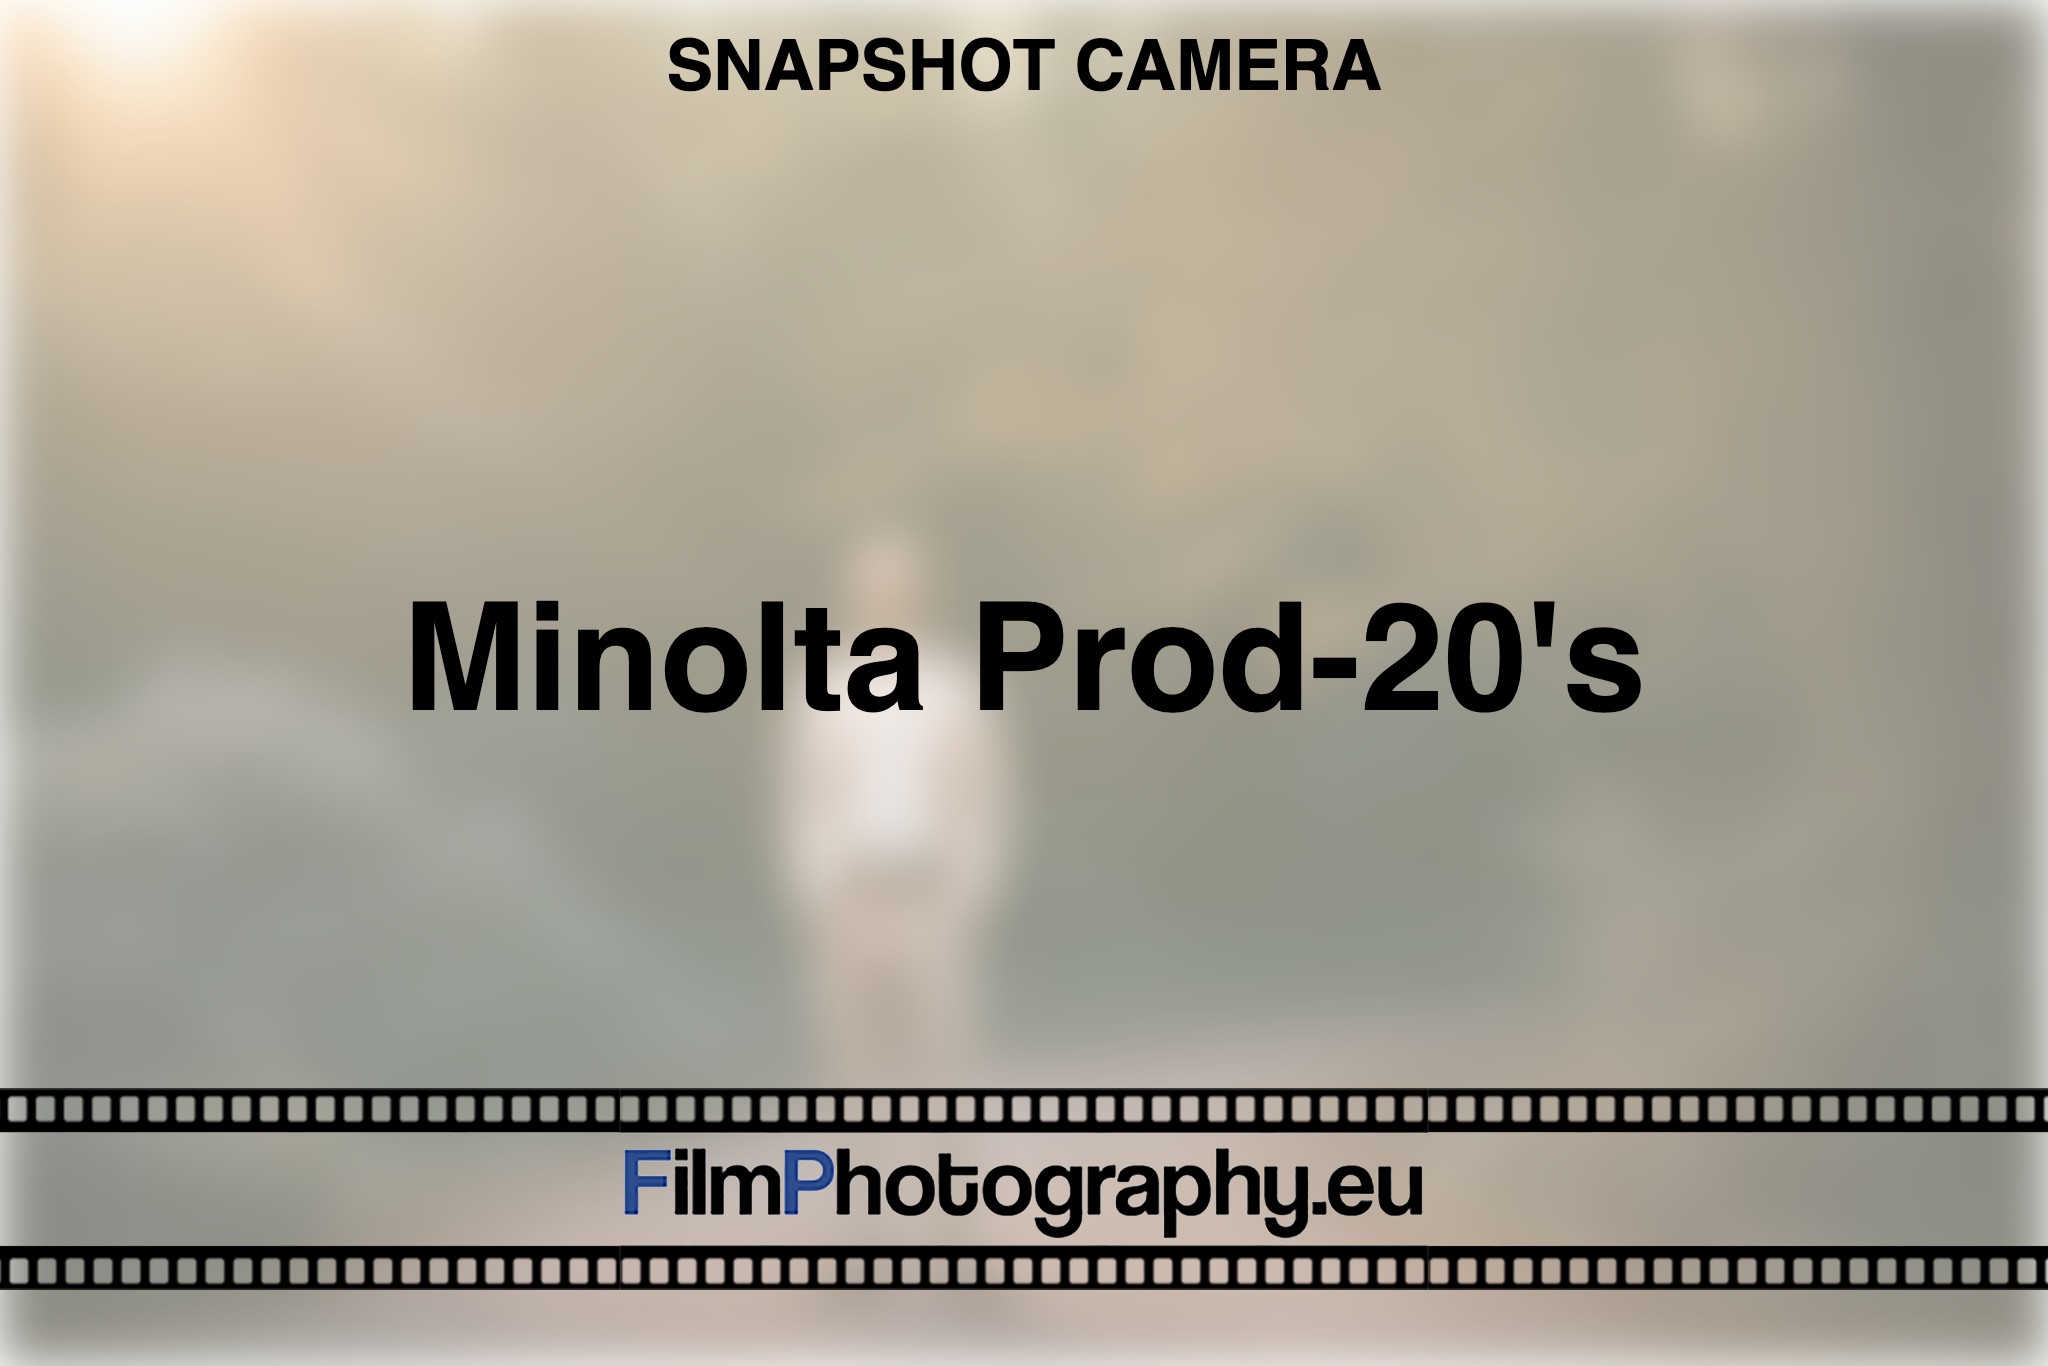 minolta-prod-20's-snapshot-camera-bnv